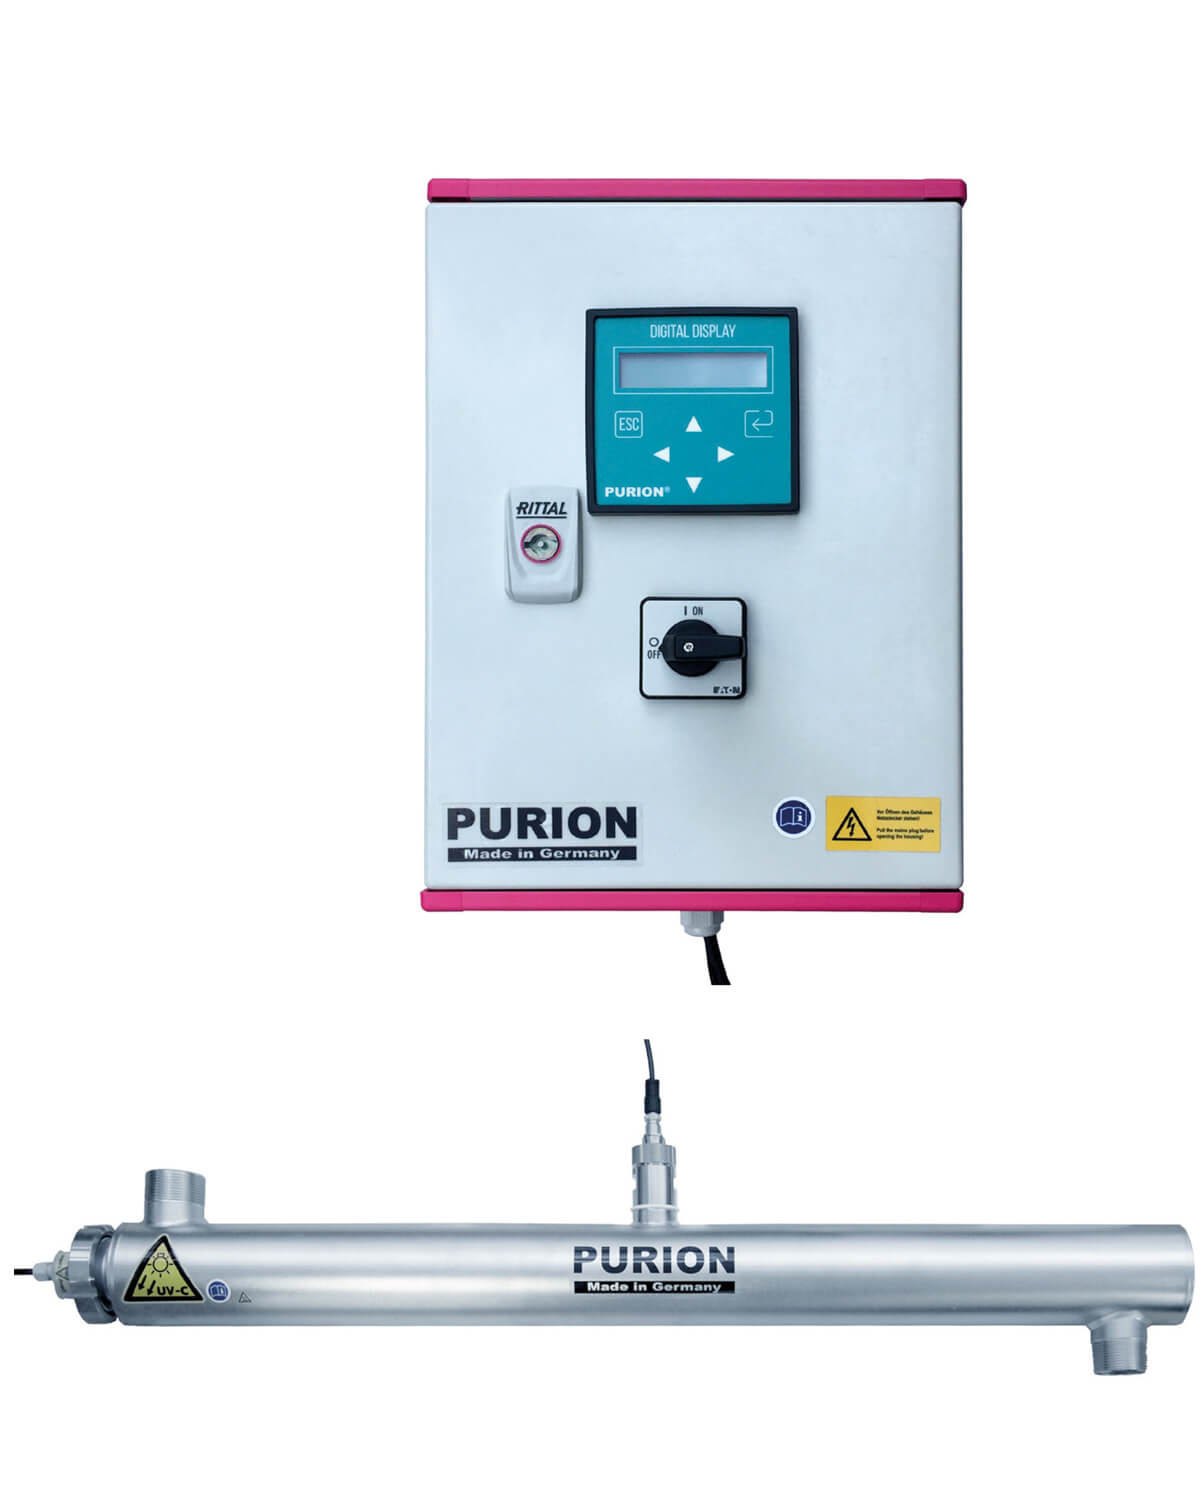 Der Satz könnte wie folgt ersetzt werden:
„PURION DVGW Zert. purion purion purion purion purion ist eine UVC-Anlage, die von der PURION GmbH für die Desinfektion von Trinkwasser zertifiziert ist.